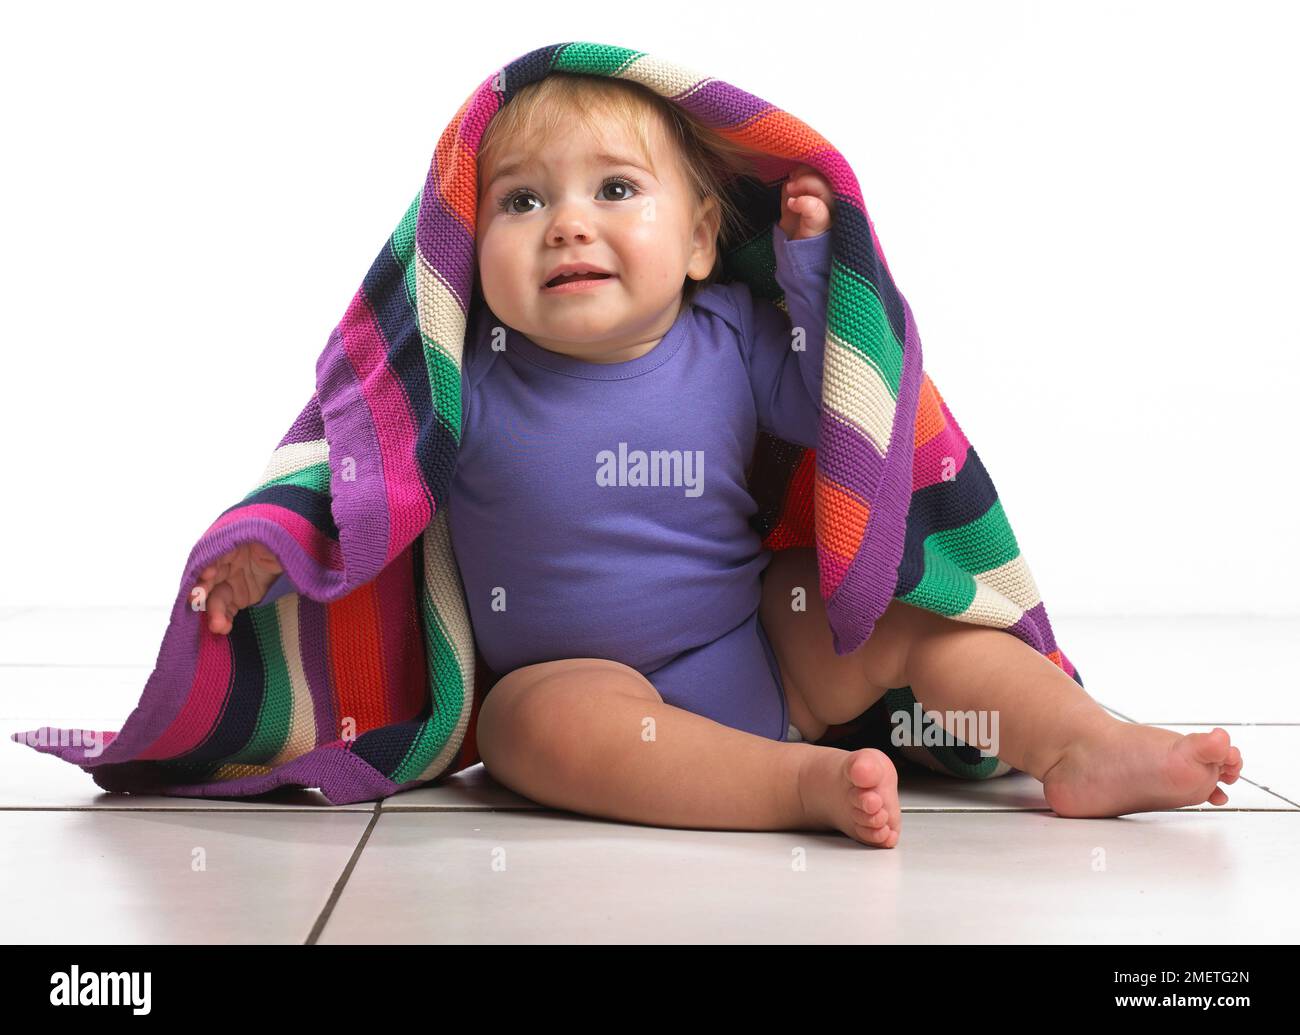 Babymädchen (12 Monate) mit bunt gestreifte Decke auf den Kopf Stockfoto